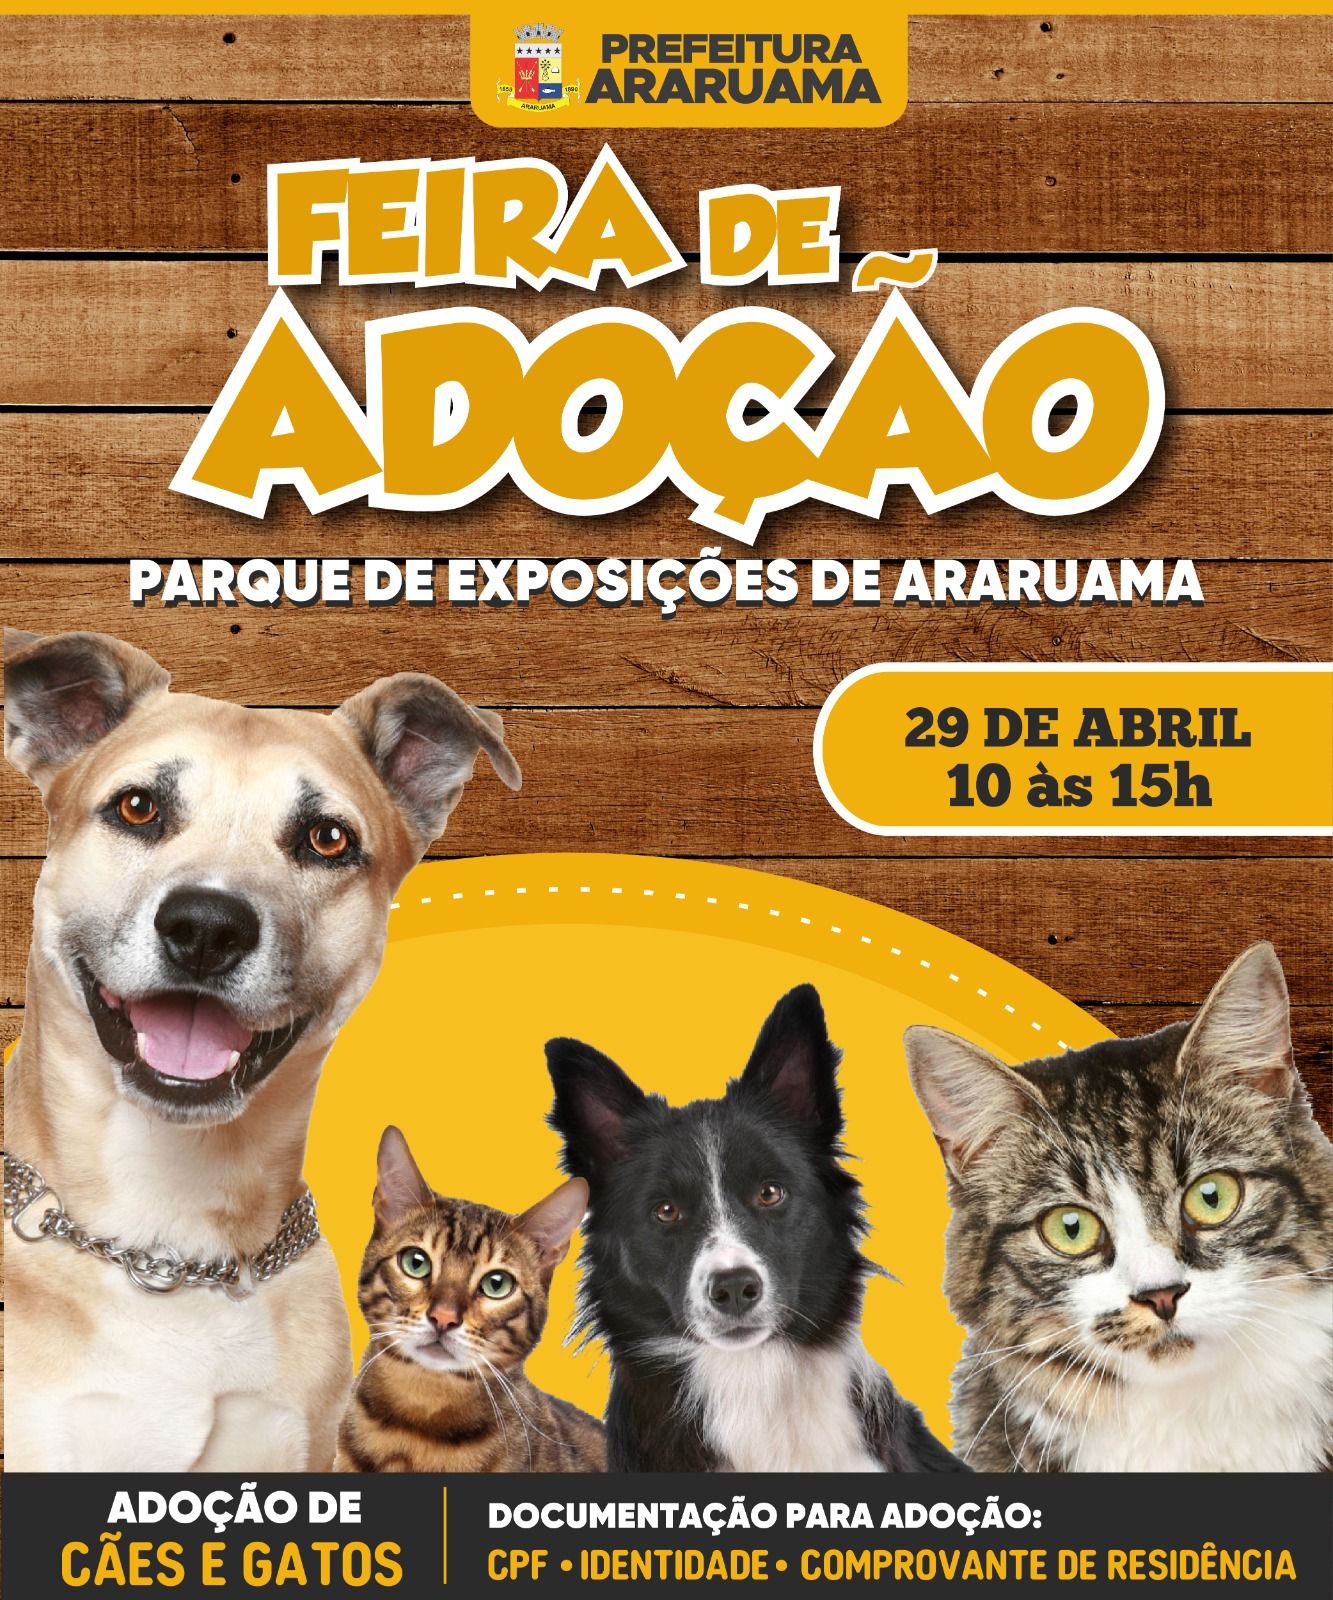 Prefeitura de Araruama vai realizar Feira de Adoção de cães e gatos no Parque de Exposições de Araruama